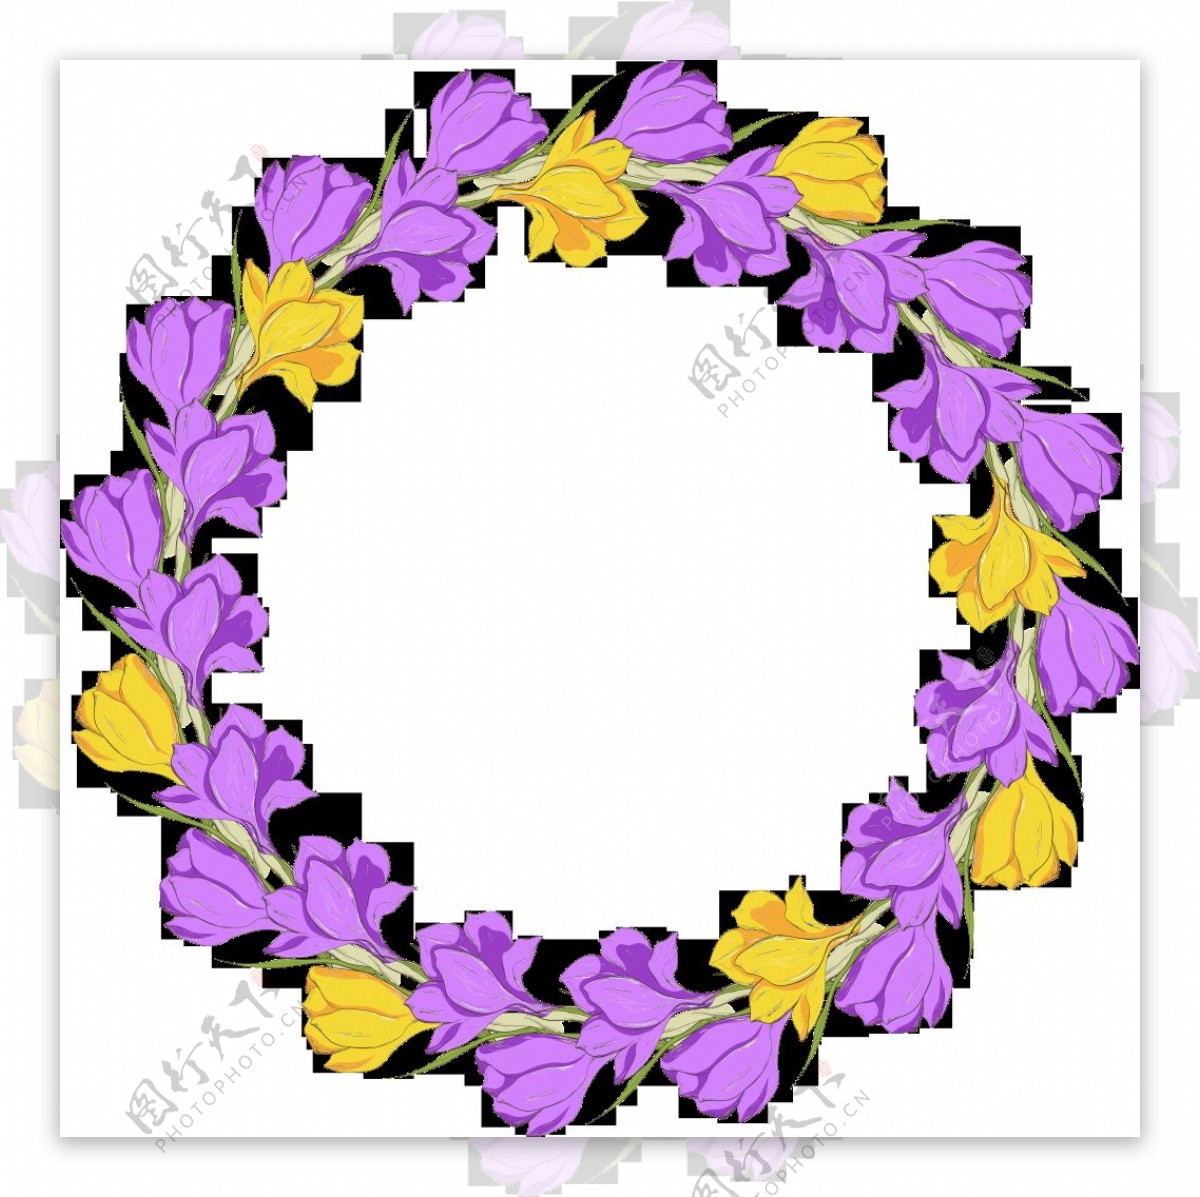 淡雅美丽紫黄双色花环透明花朵素材